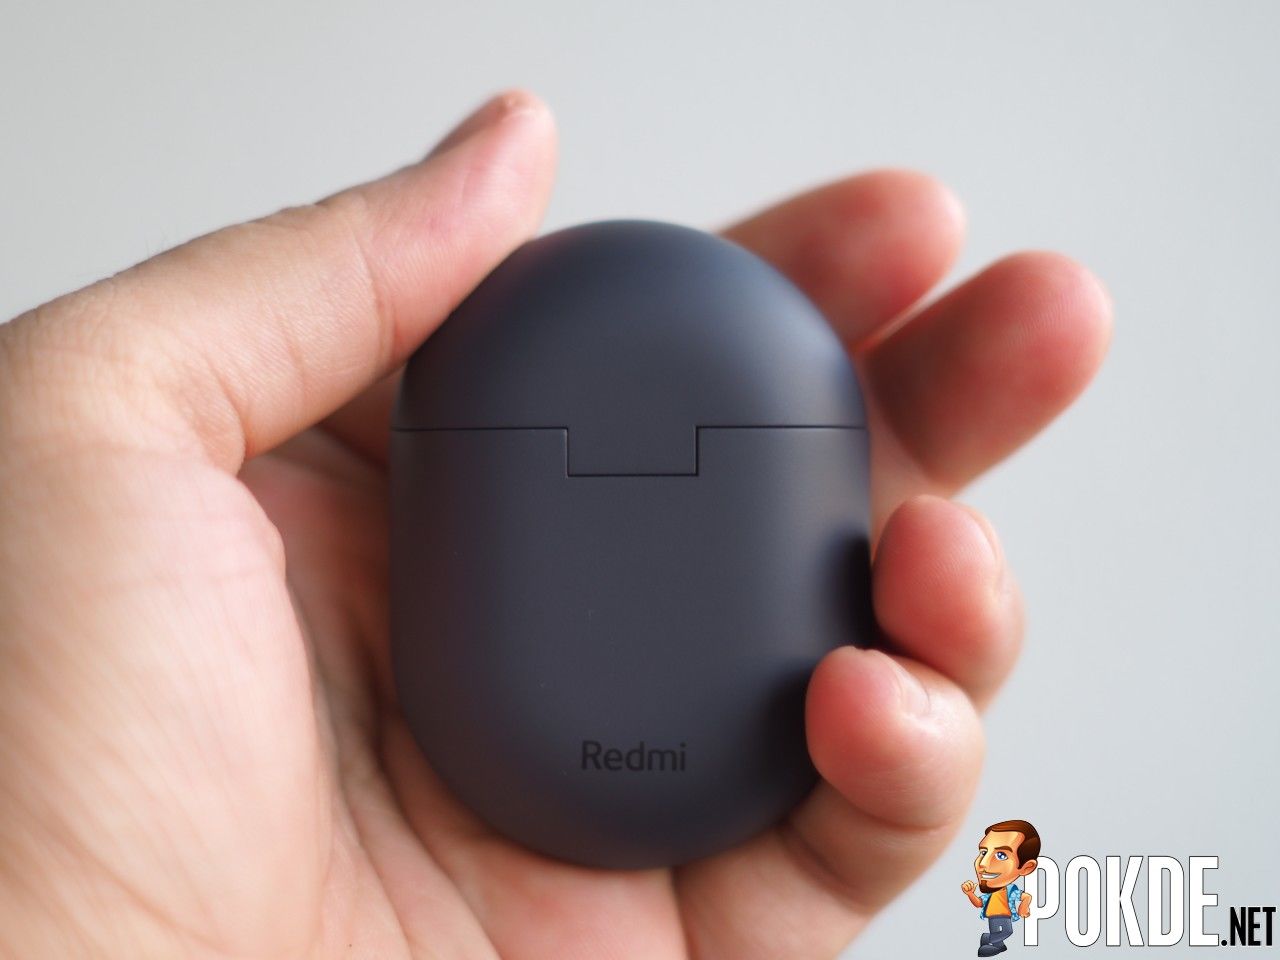 Xiaomi-Redmi-Buds-3-Pro-Graphite-Black